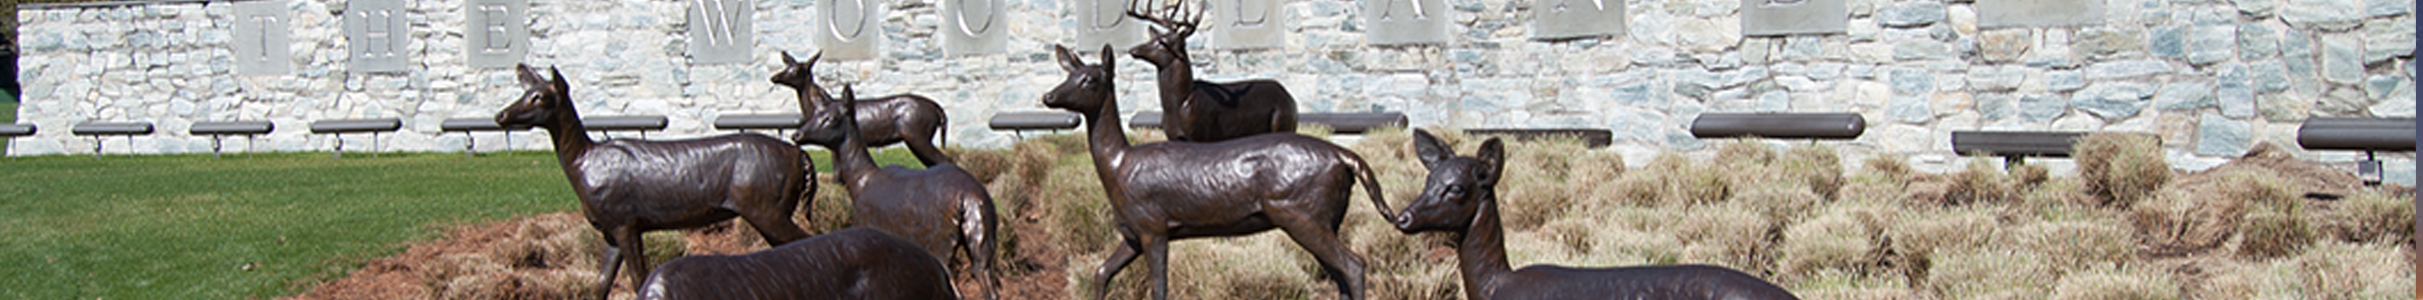 The Woodlands, TX iconic deer sculptures.